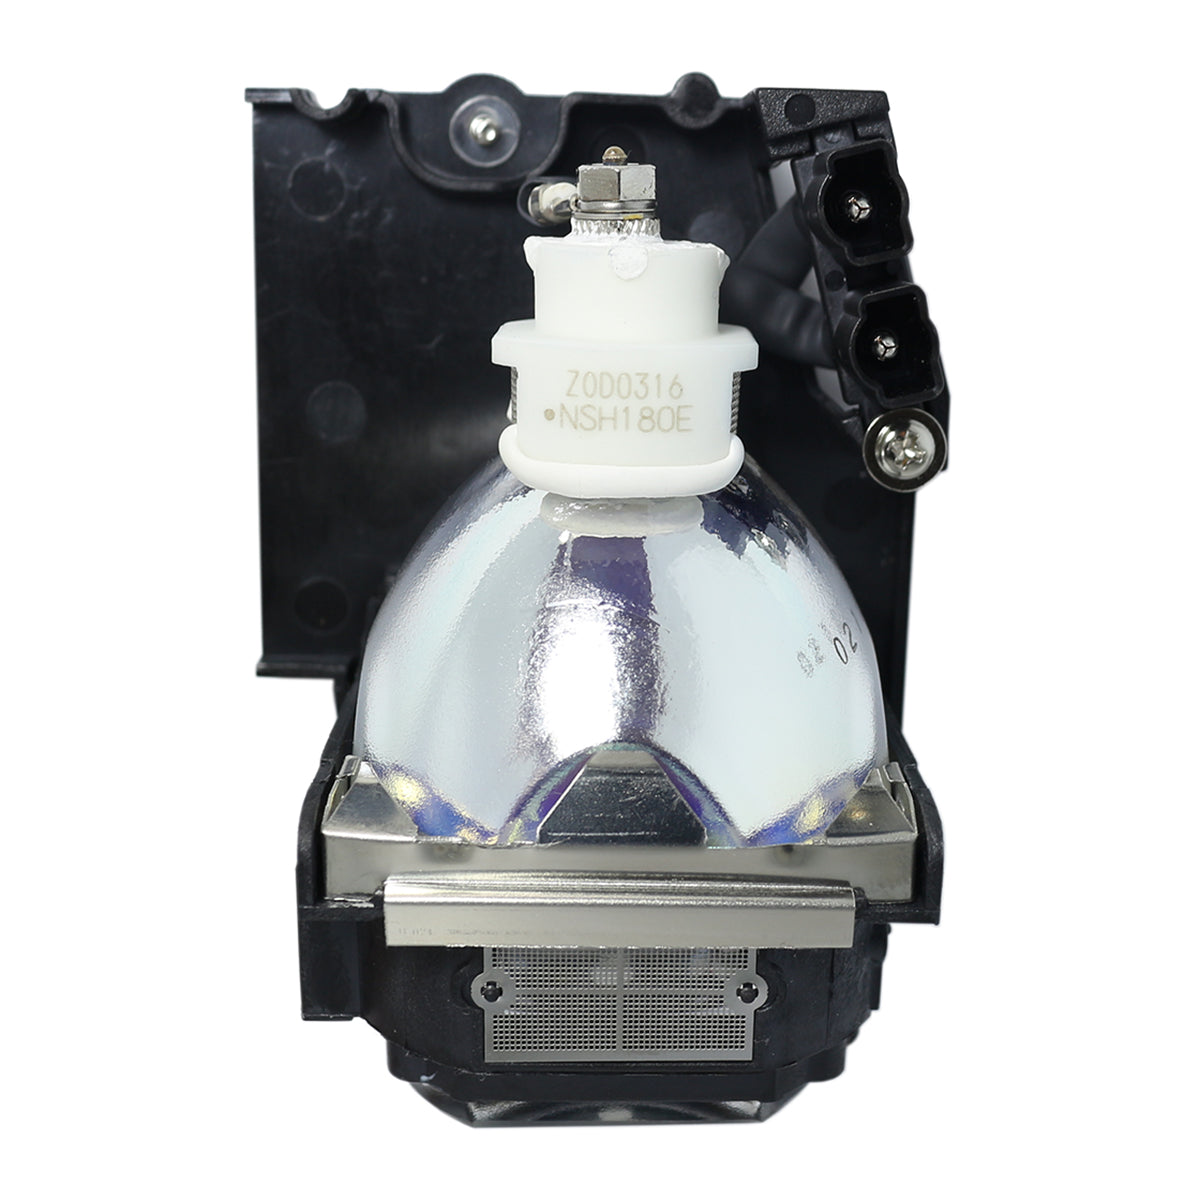 Ushio NSH180E Ushio Projector Lamp Module